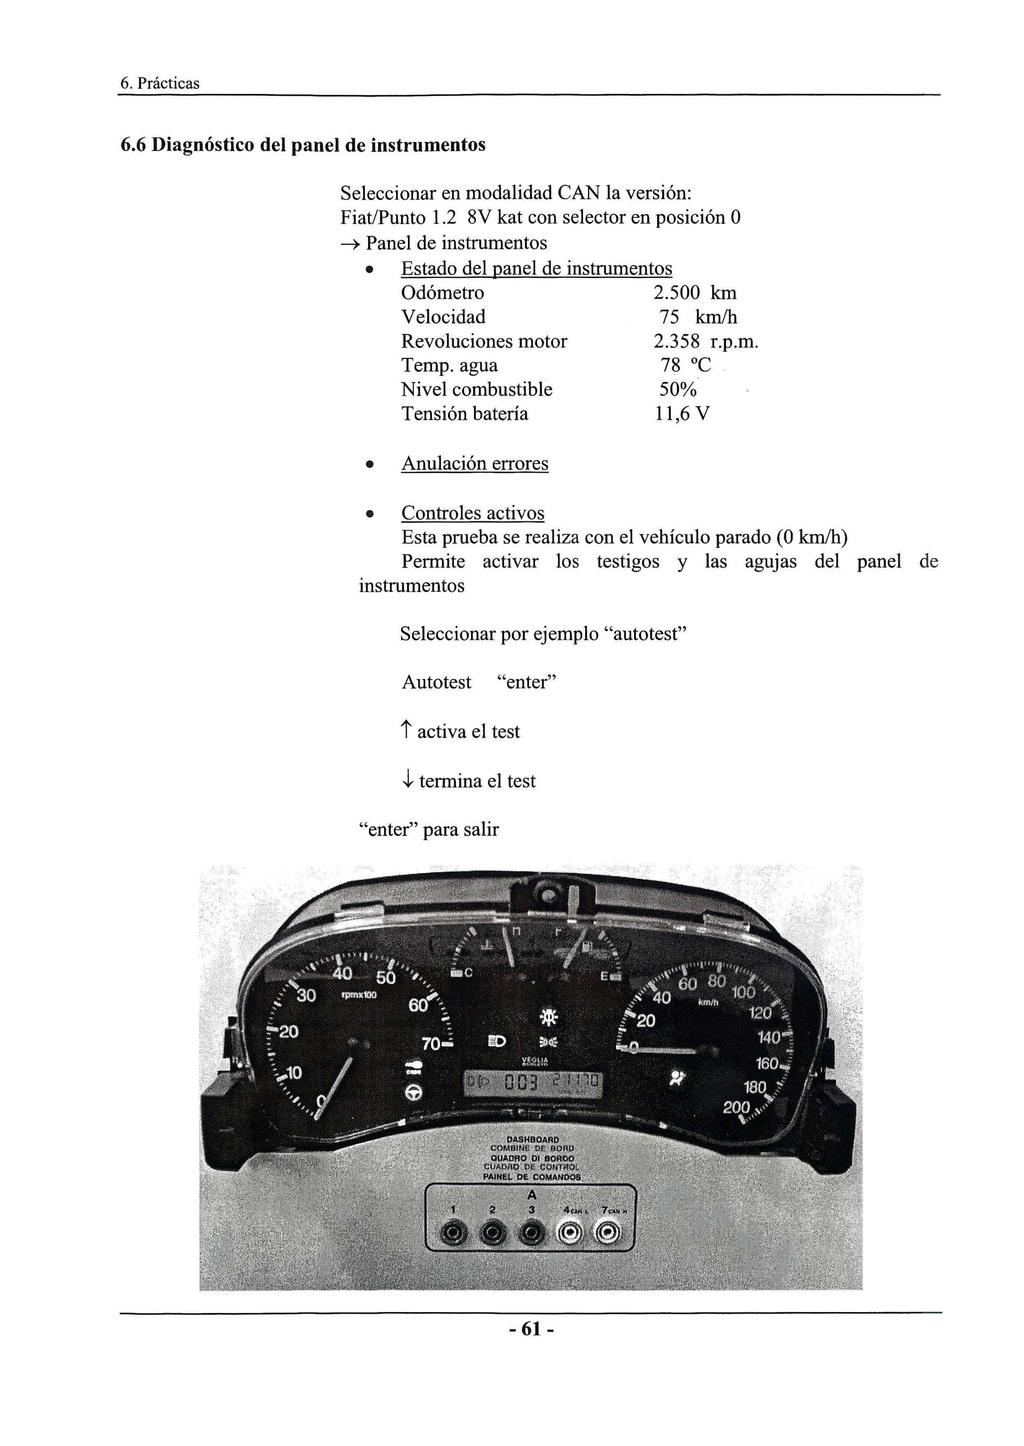 6.6 Diagnóstico del panel de instrumentos Seleccionar en modalidad CAN la versión: Fiat/Punto 1.2 8V kat con selector en posición O ~ Panel de instrumentos Estado del panel de instrumentos Odómetro 2.